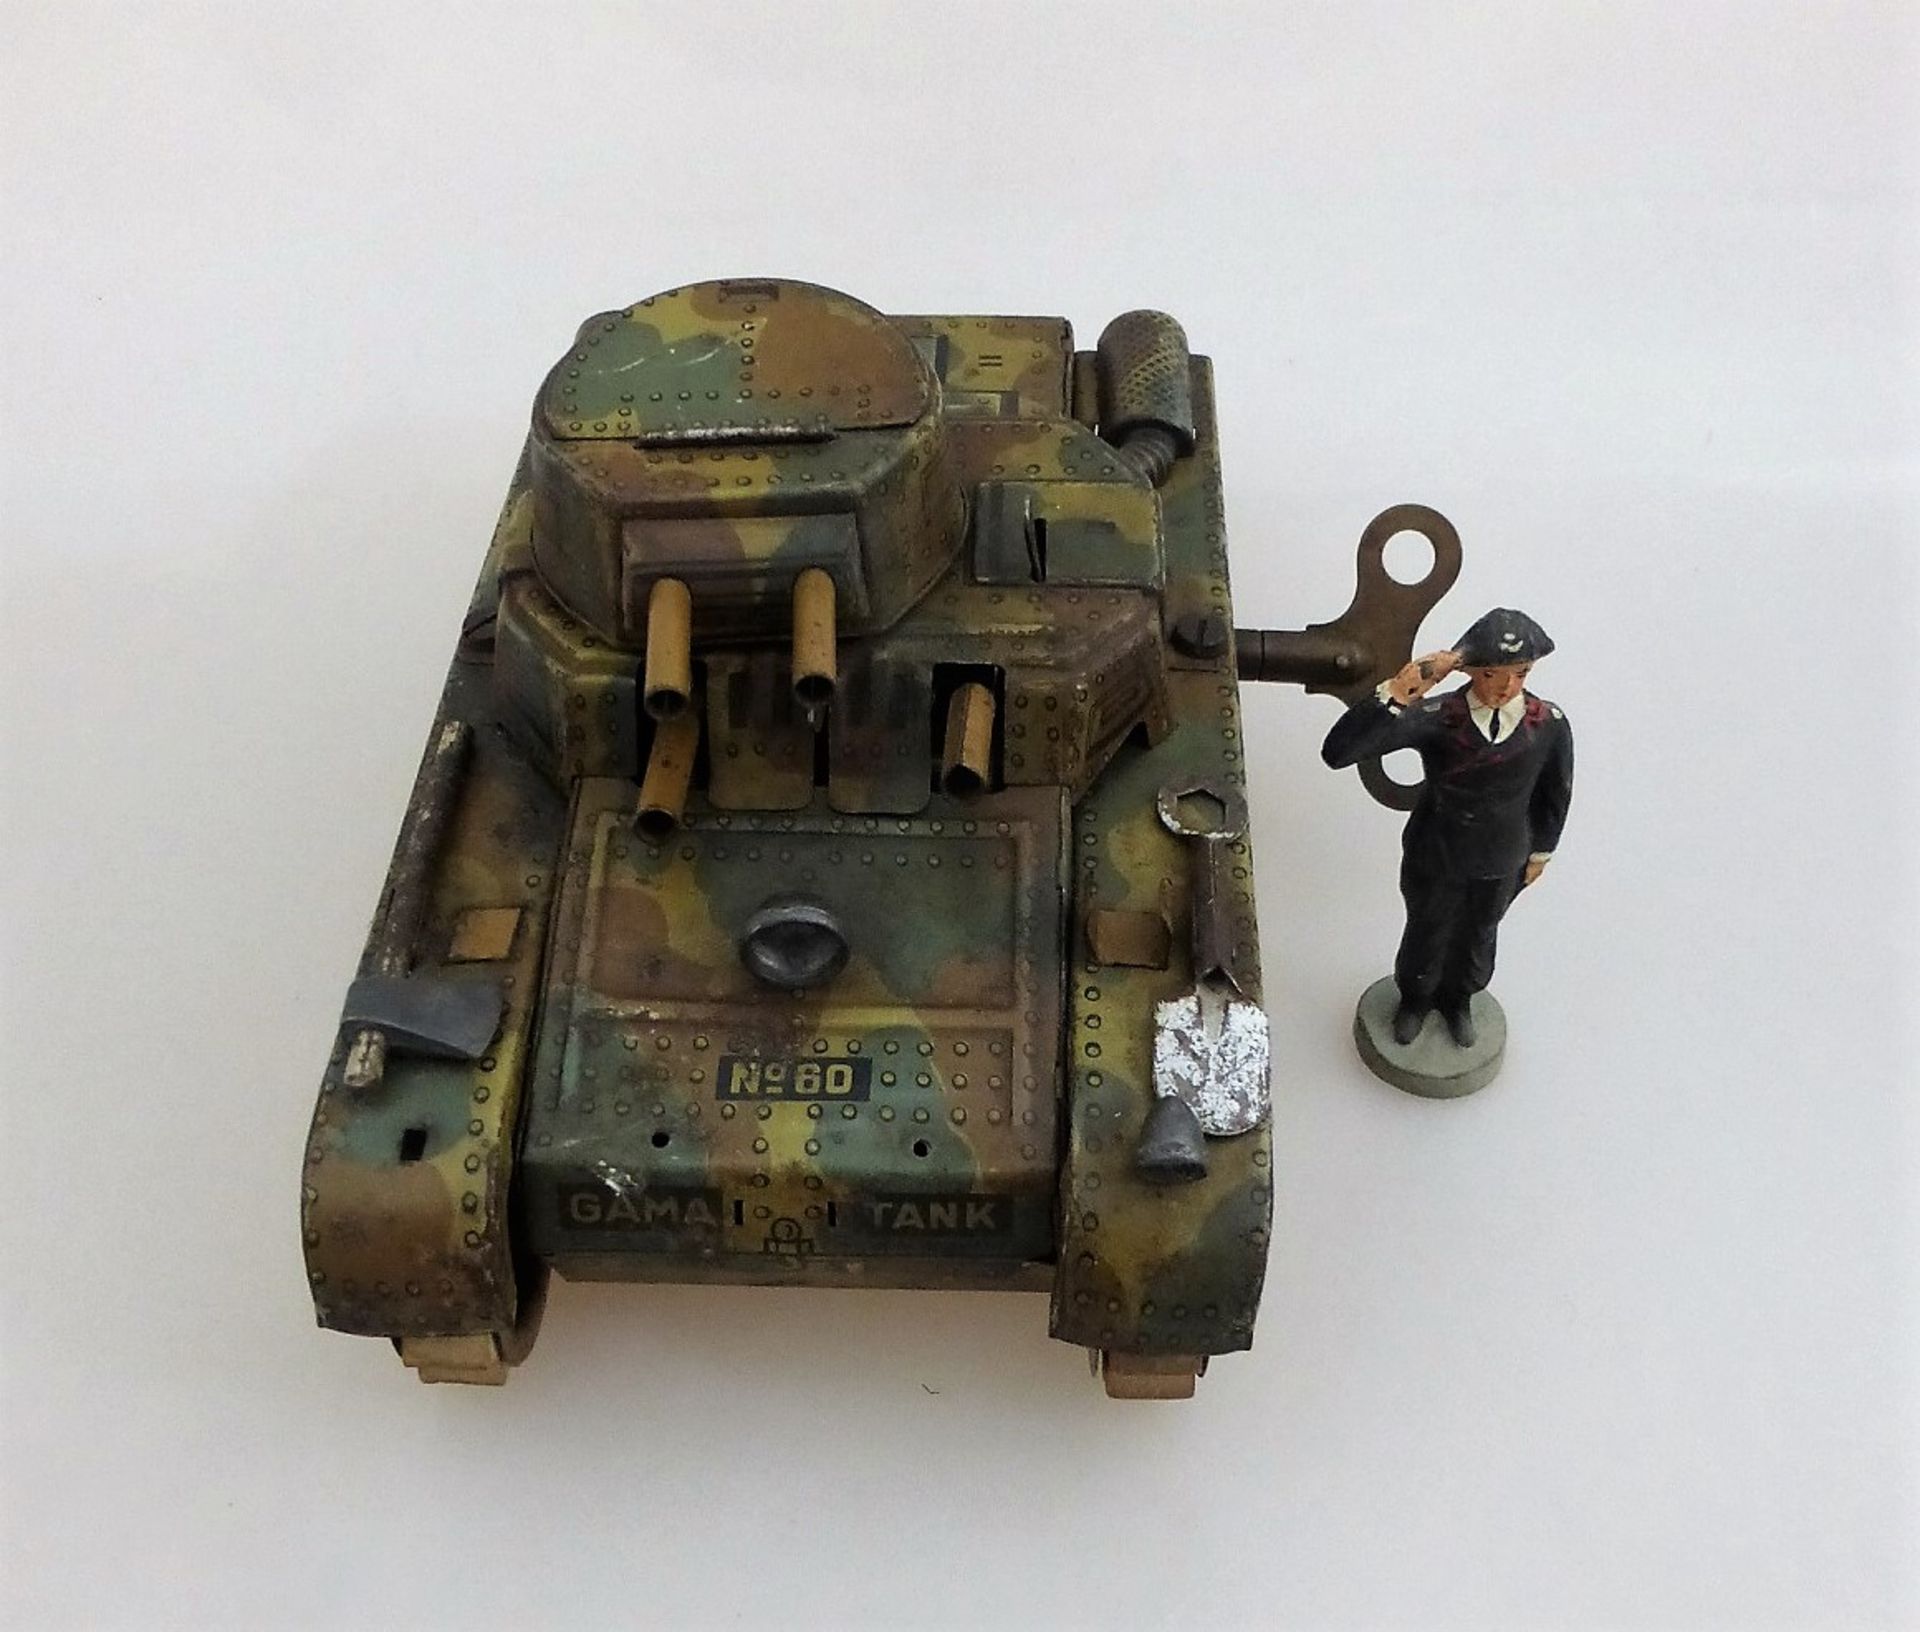 Blechspielzeug, deutsch um 1940, Gama Tank No. 60 - Image 2 of 4